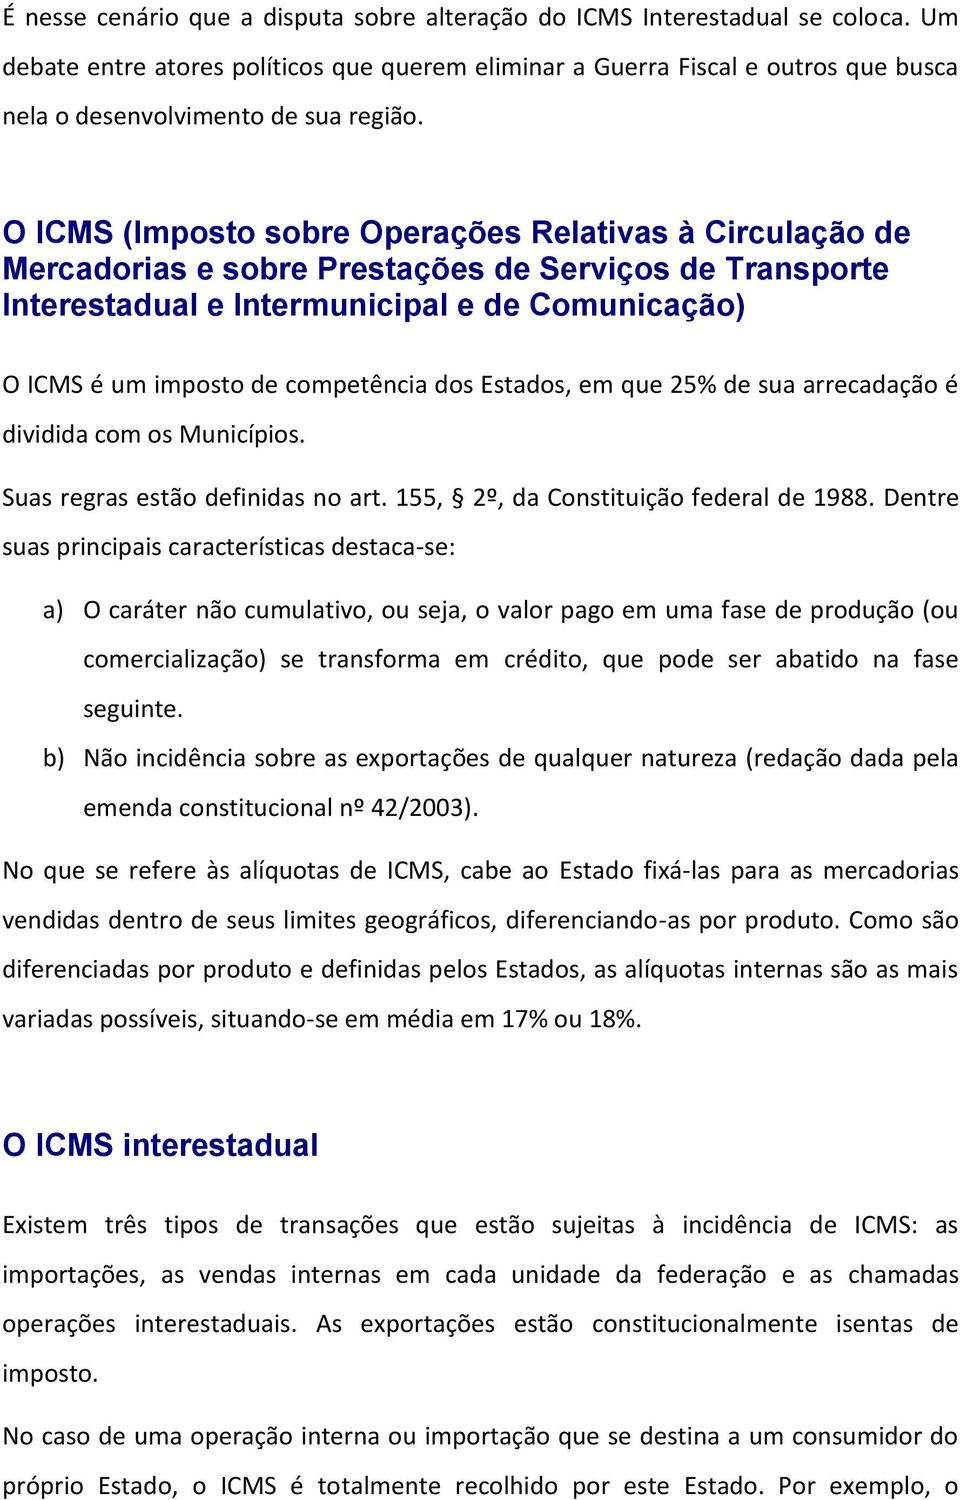 O ICMS (Imposto sobre Operações Relativas à Circulação de Mercadorias e sobre Prestações de Serviços de Transporte Interestadual e Intermunicipal e de Comunicação) O ICMS é um imposto de competência